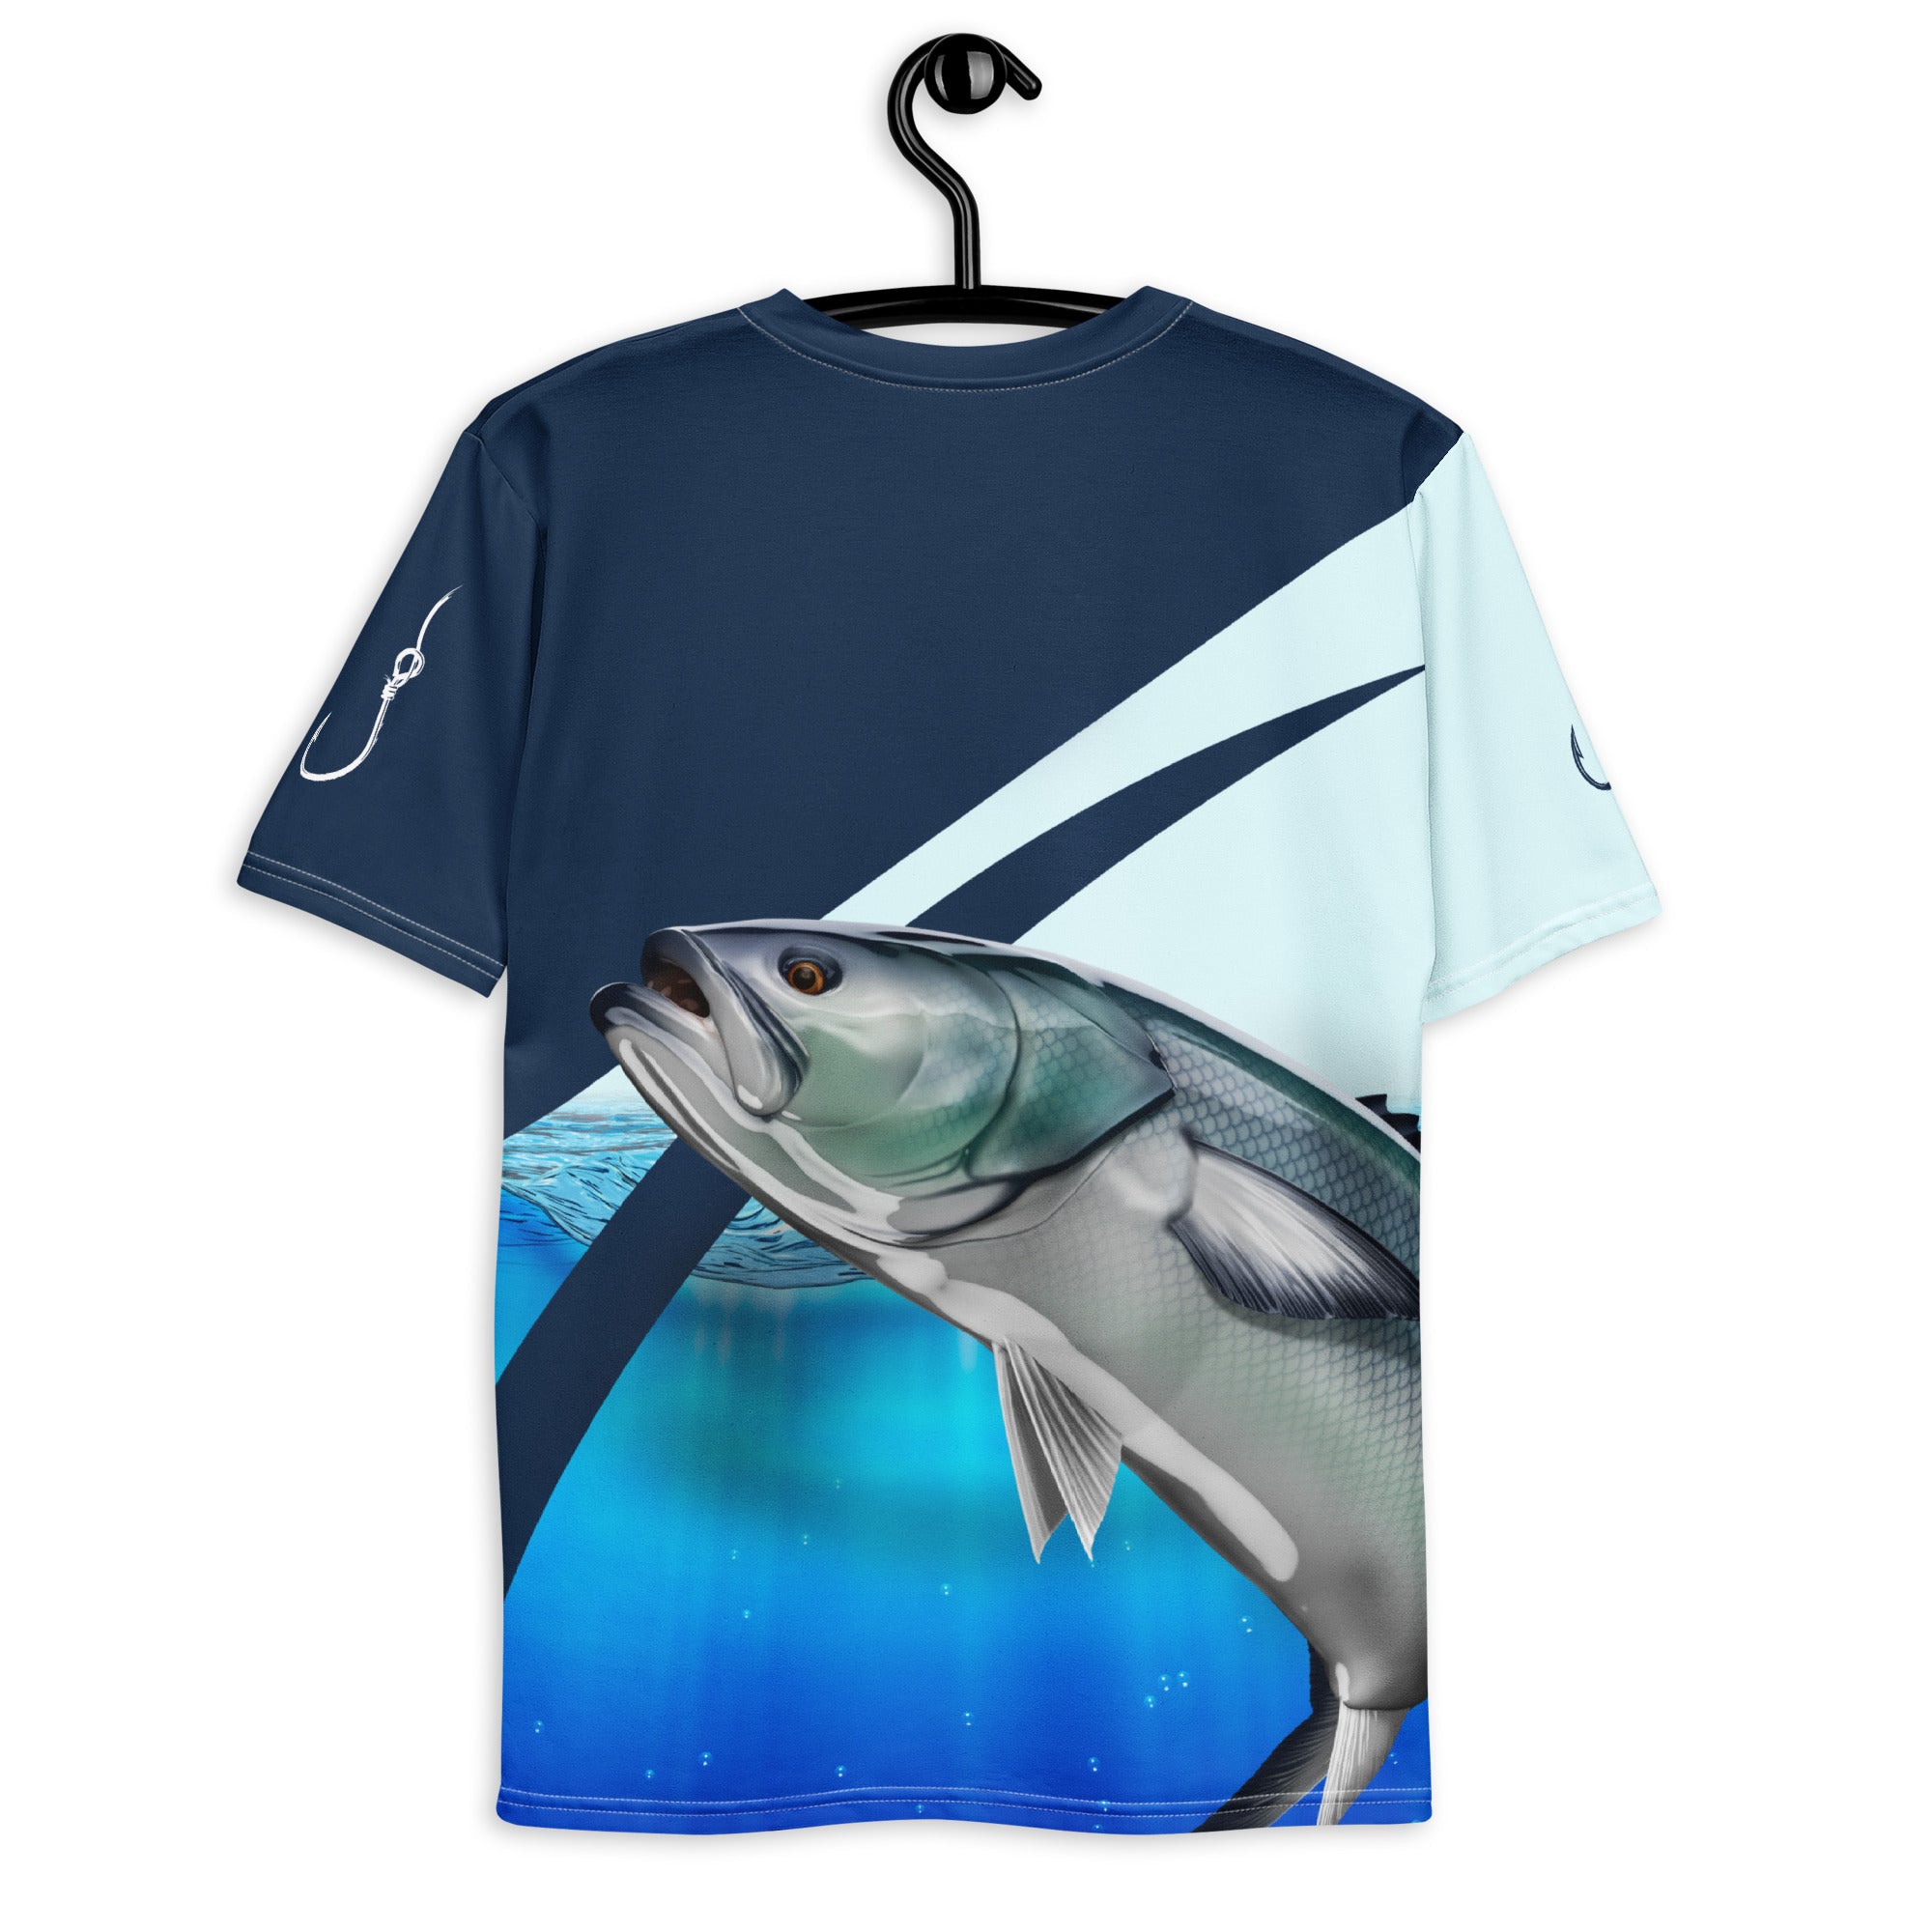 Blaufisch 3D-Druckmenschen T-Shirt coole Sommermode Unisex Kurzarm T-Shirt Casual Tee Tops